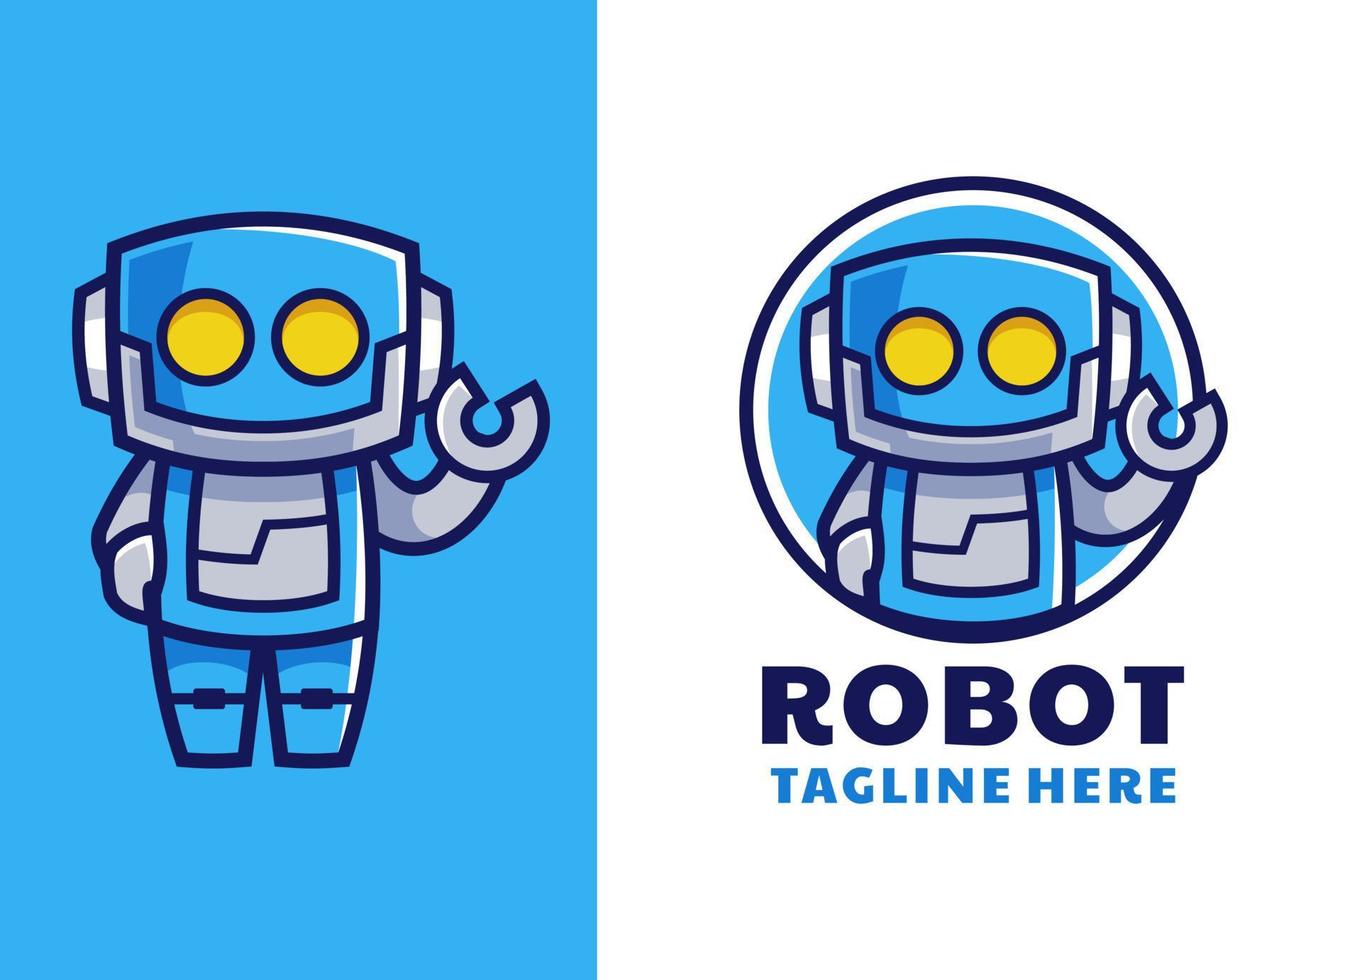 blaues Roboter-Cartoon-Maskottchen-Logo-Design vektor